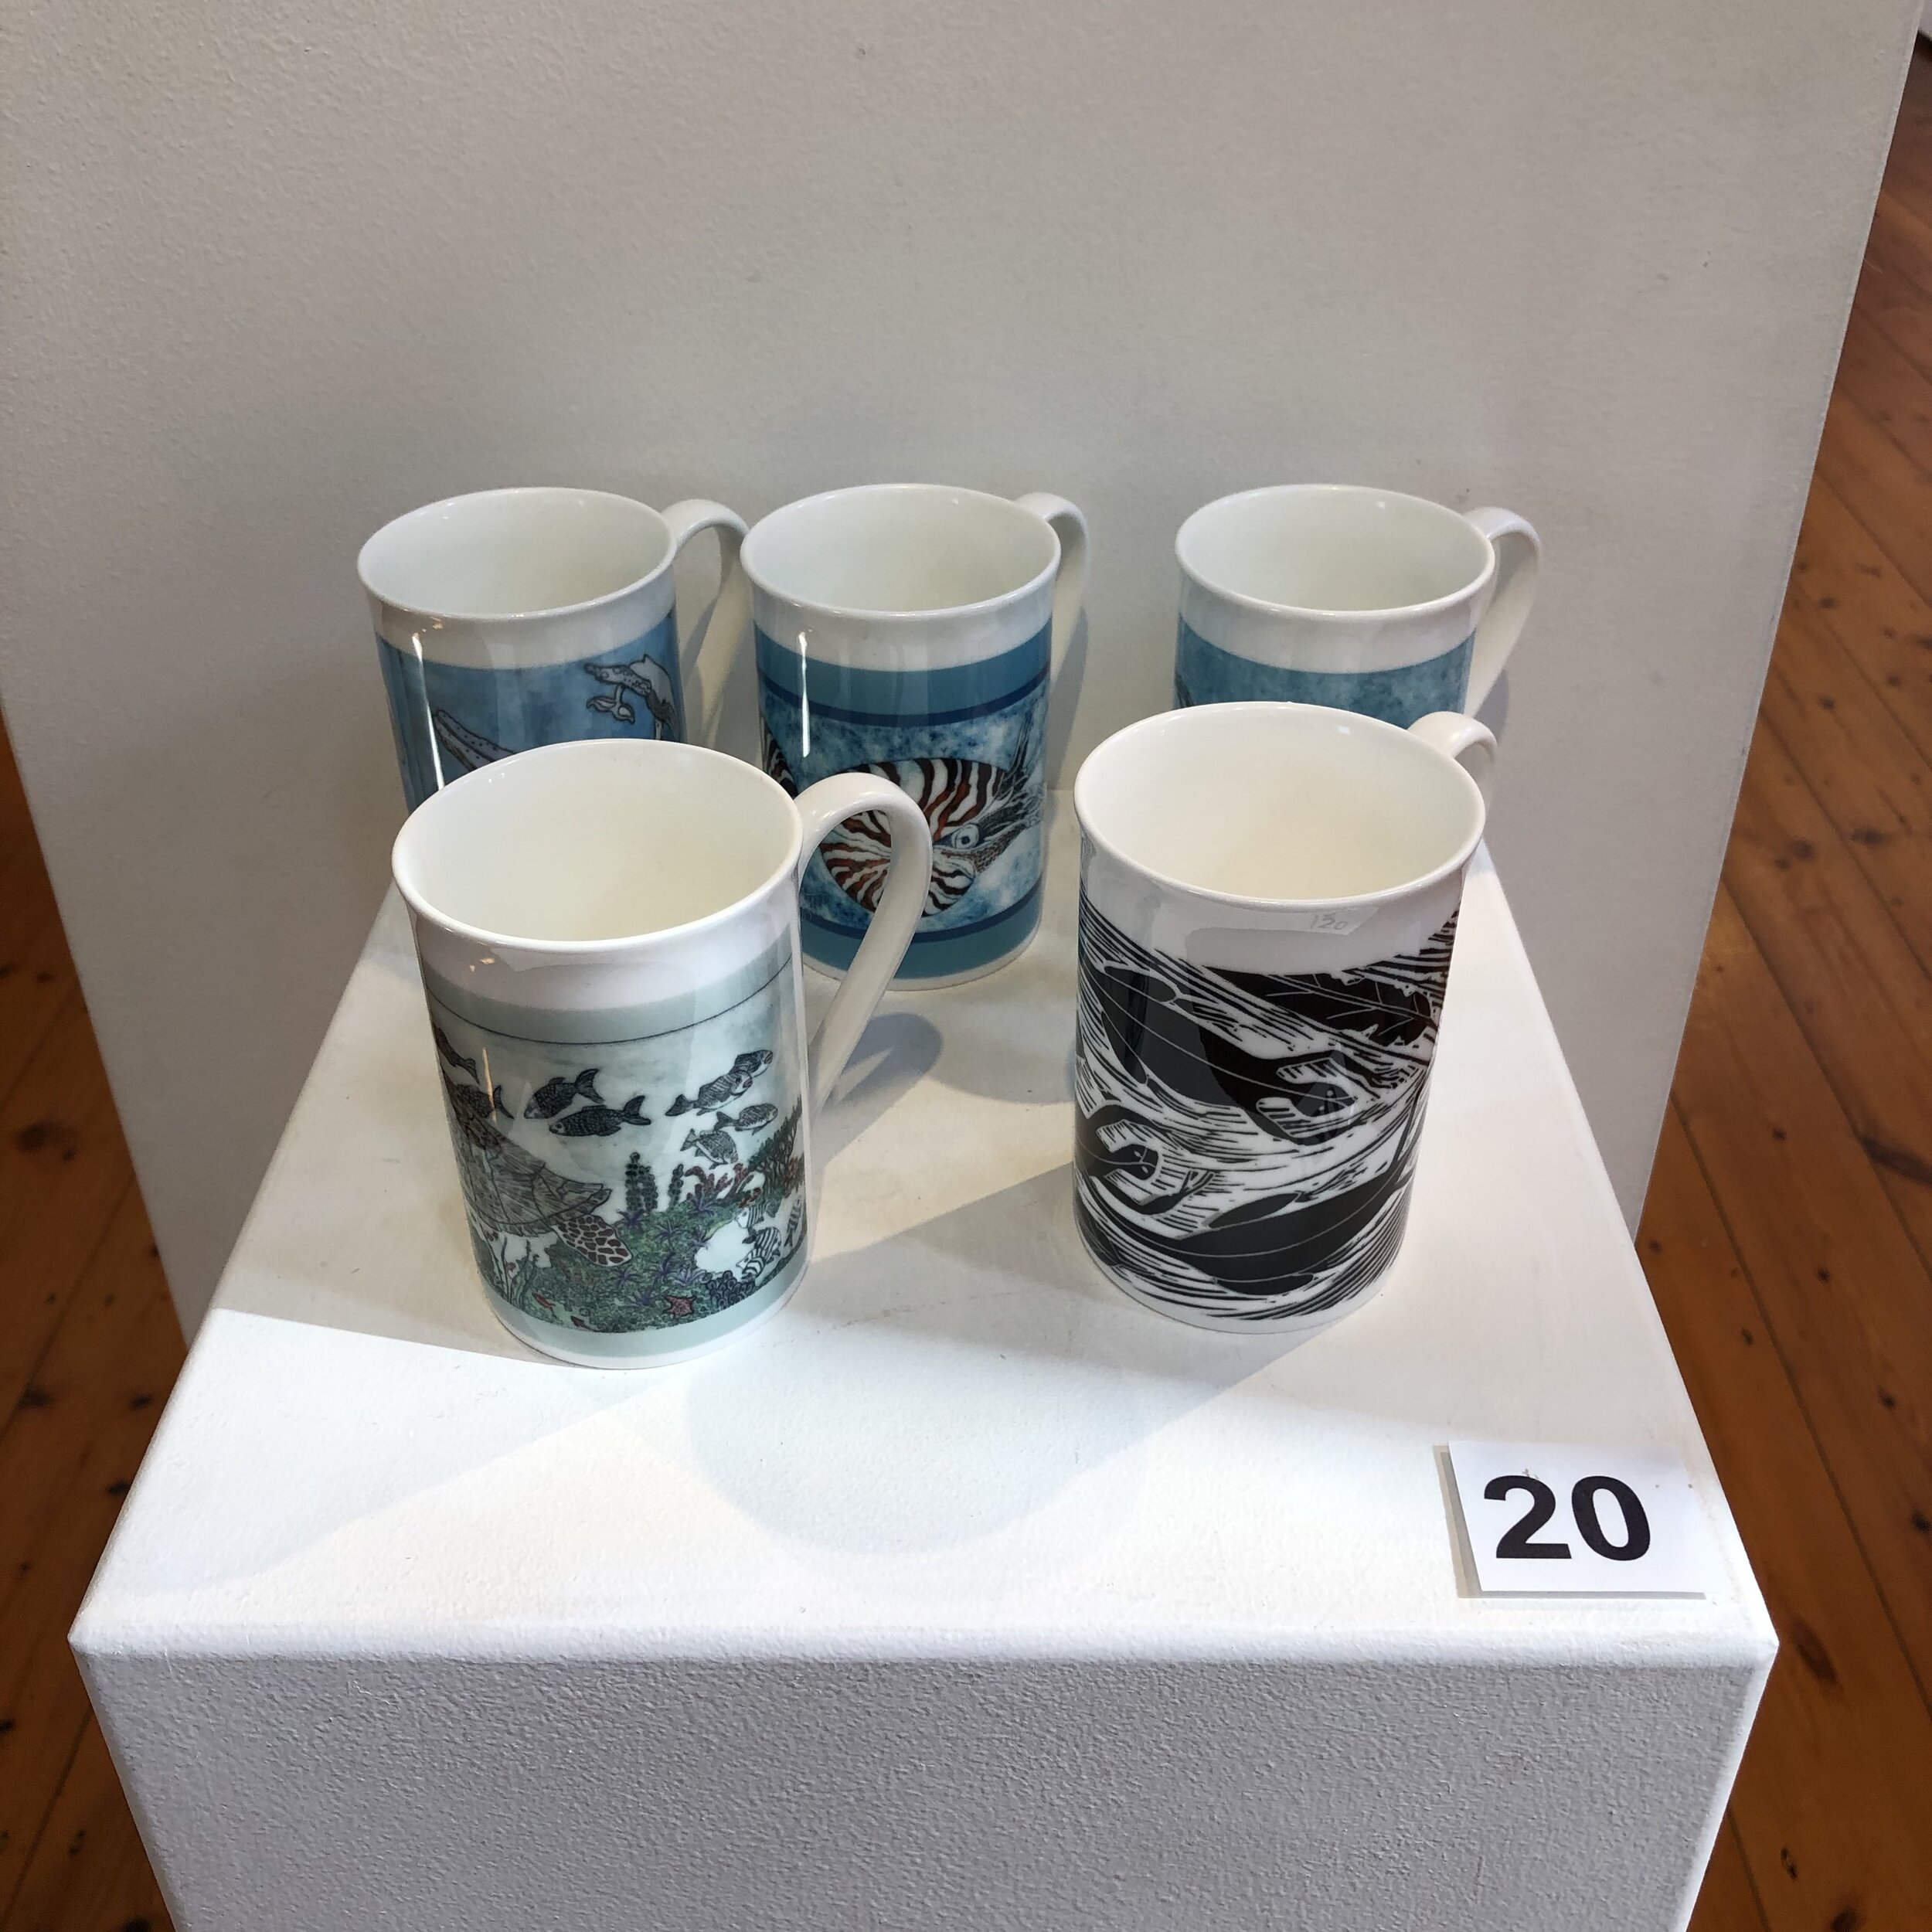 "Printed Mugs" by Rosie Lyons